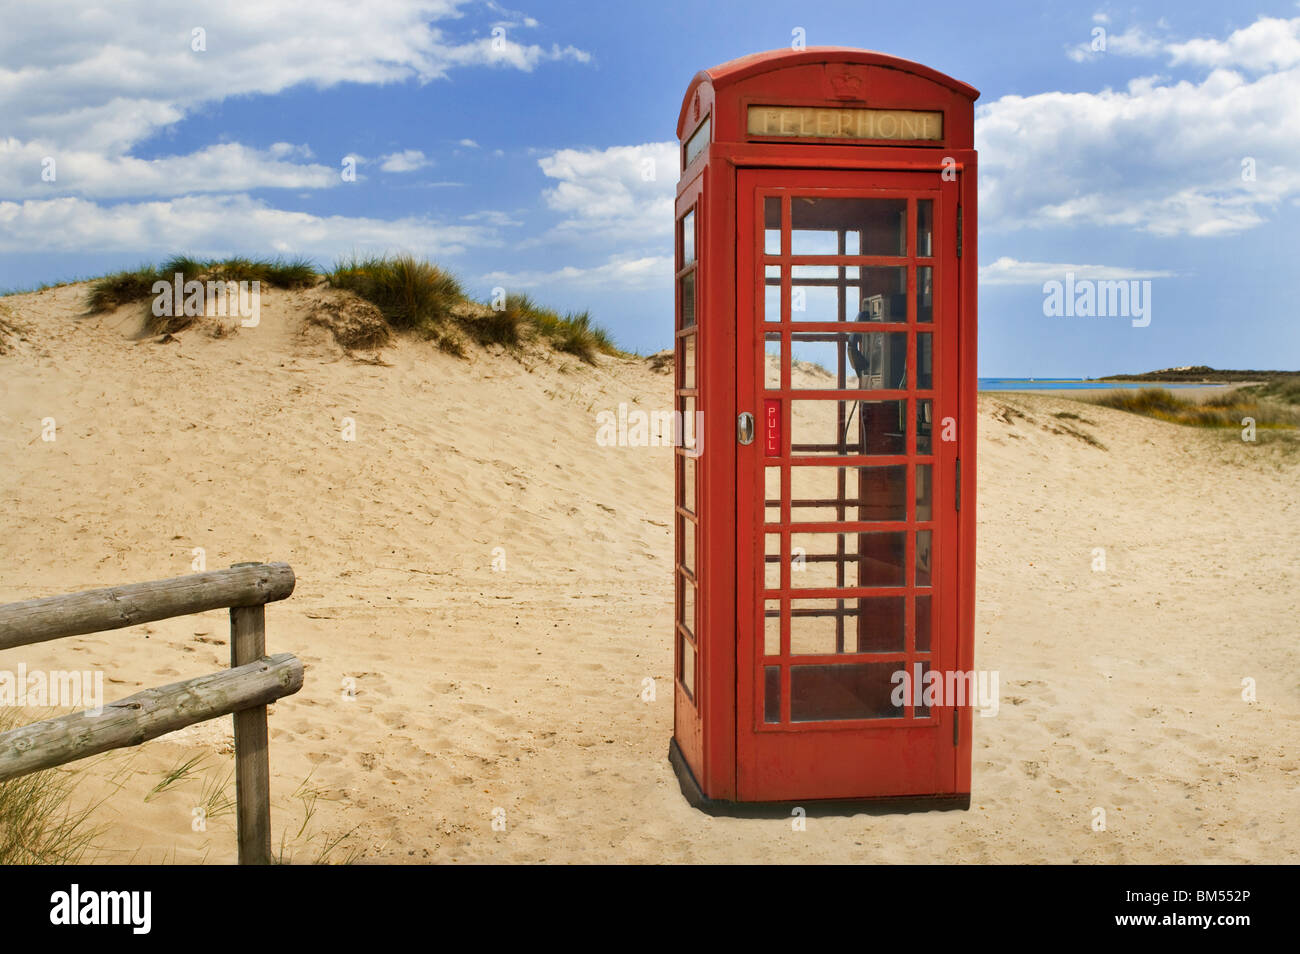 La traditionnelle boîte de téléphone rouge encore en service sur le dunes de sable côtières de la péninsule de Studland, Dorset England UK Banque D'Images